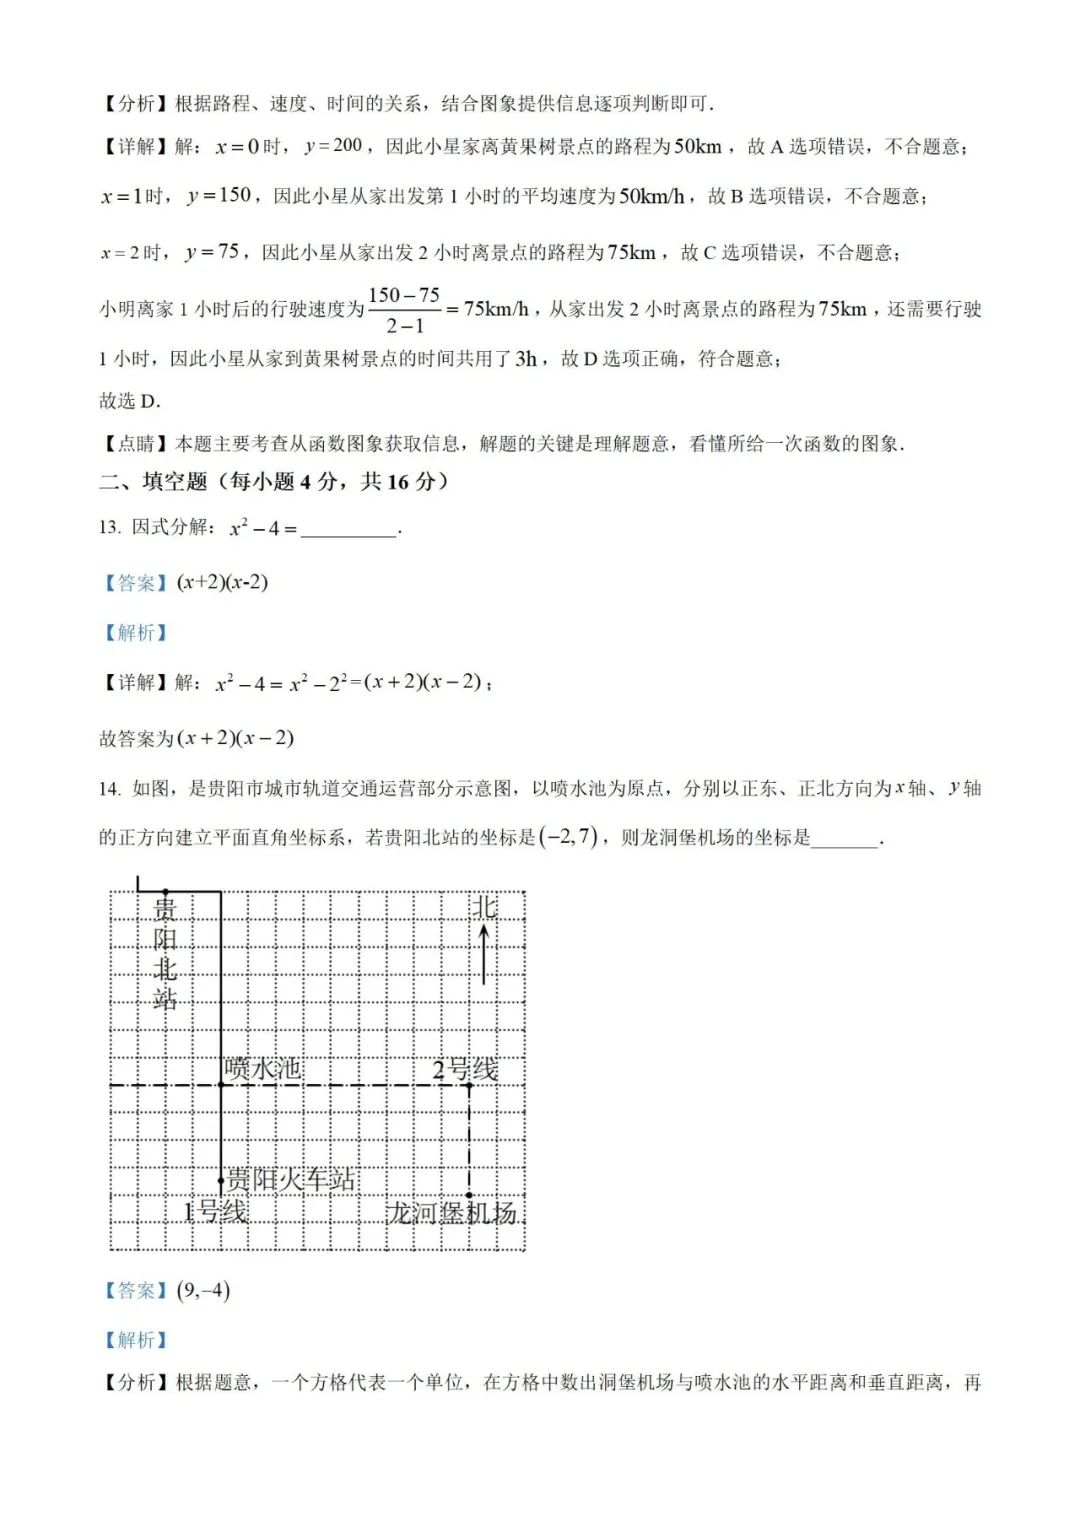 【中考真题】2023年贵州省中考数学真题 (带答案解析) 第15张